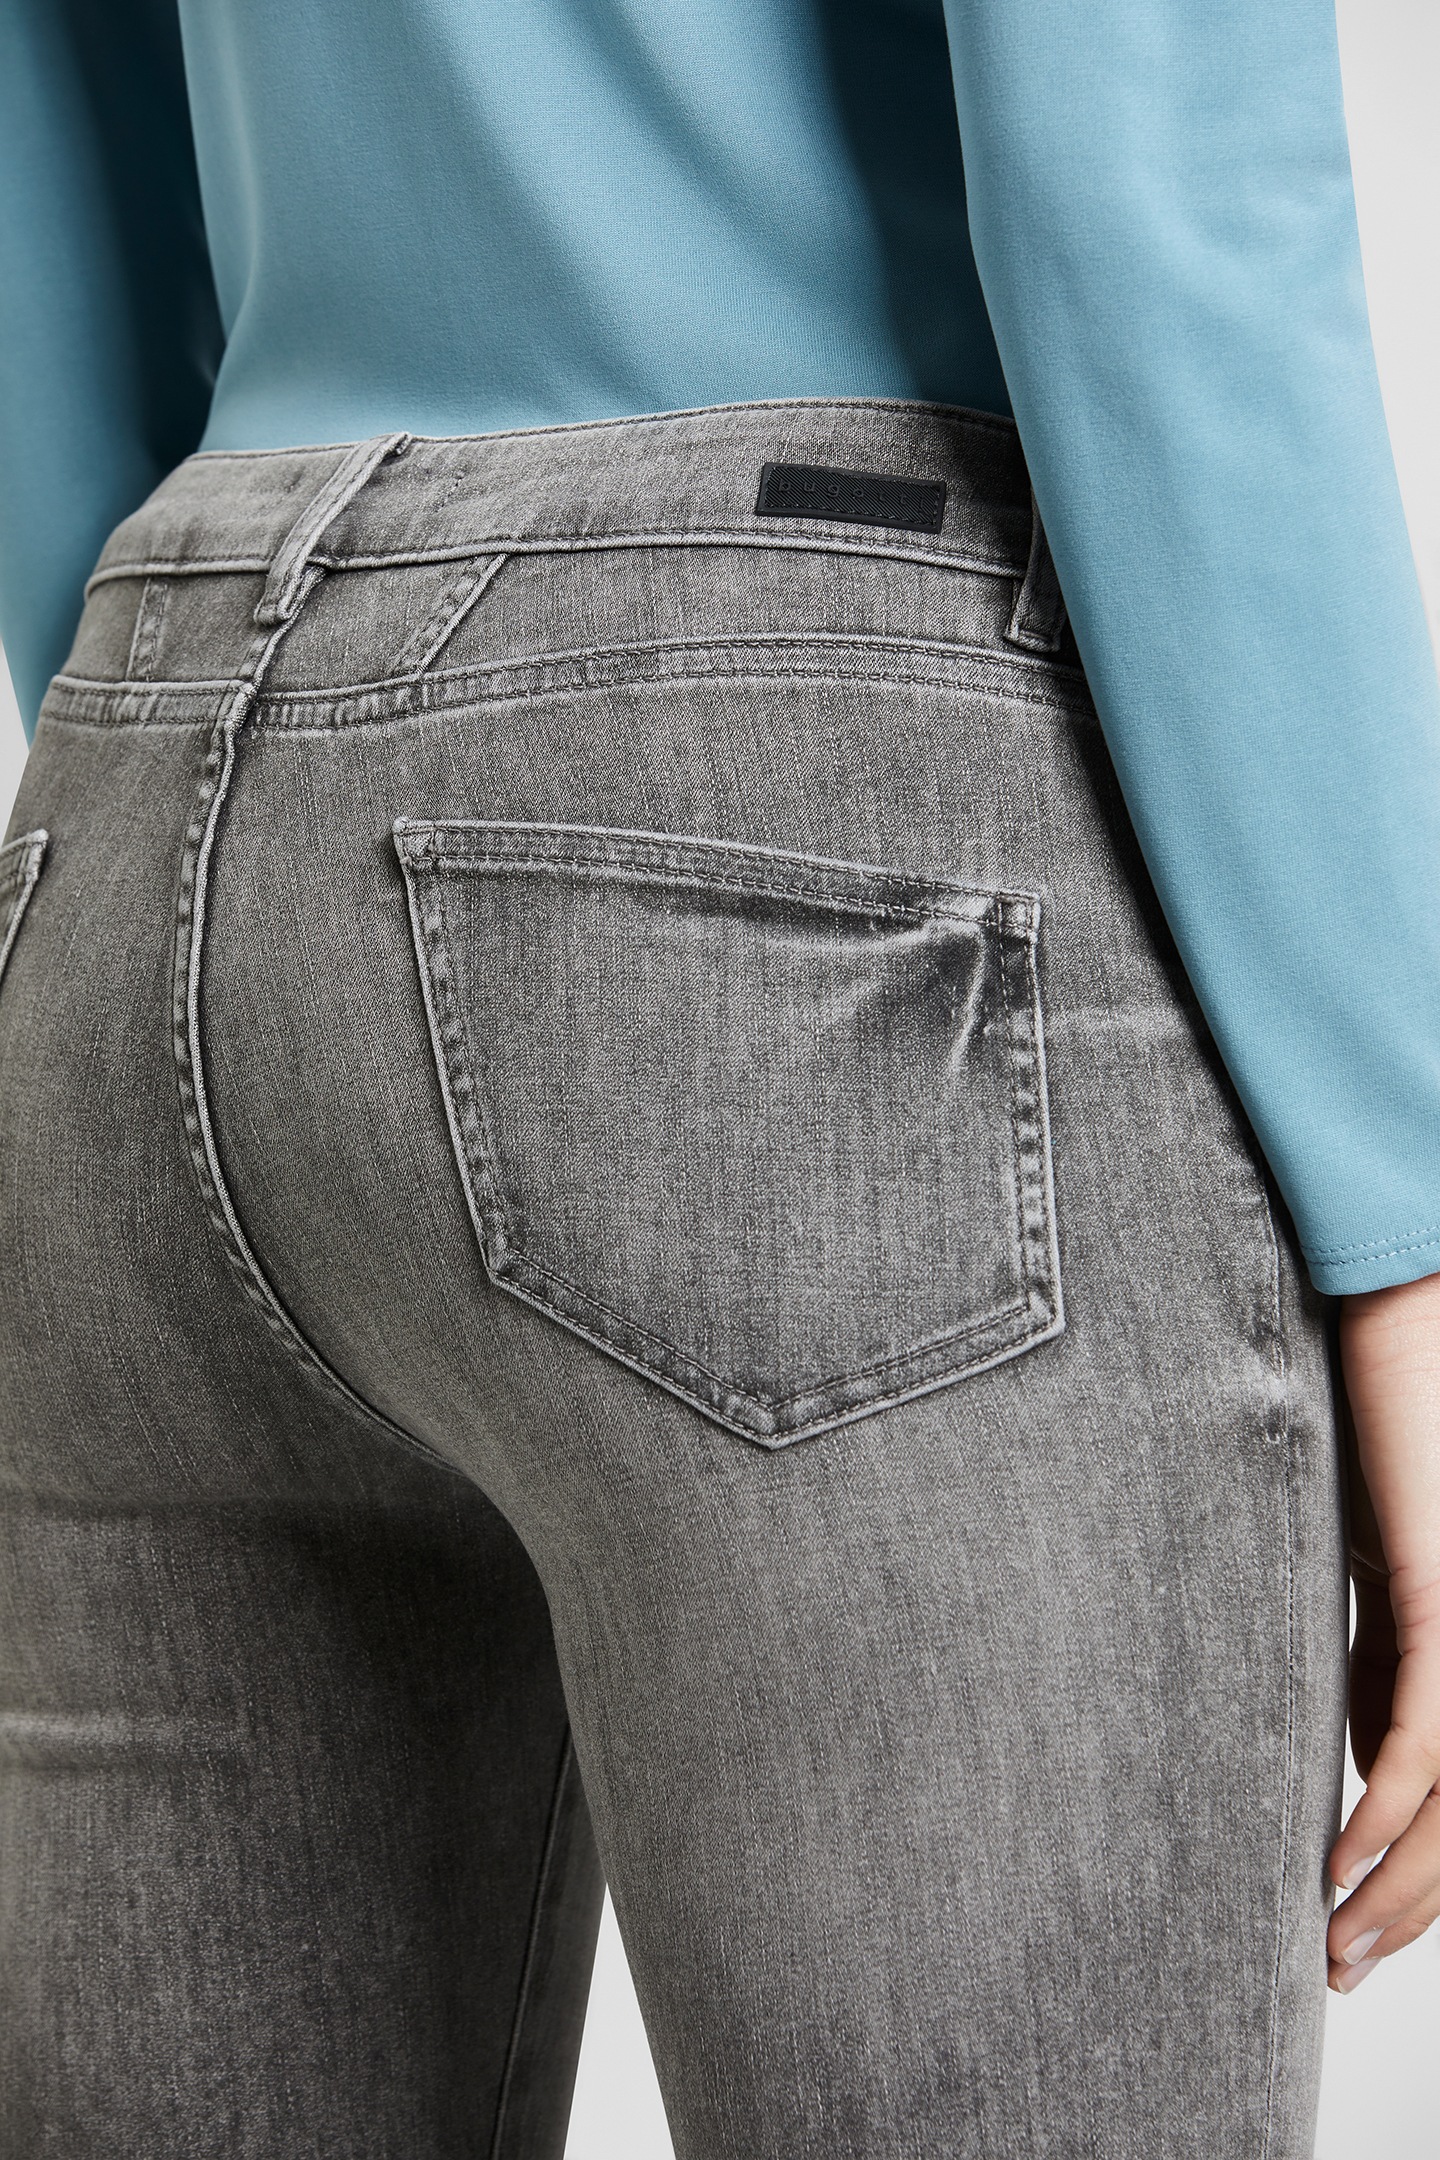 5-Pocket-Jeans, leichte bugatti online Used-Waschung